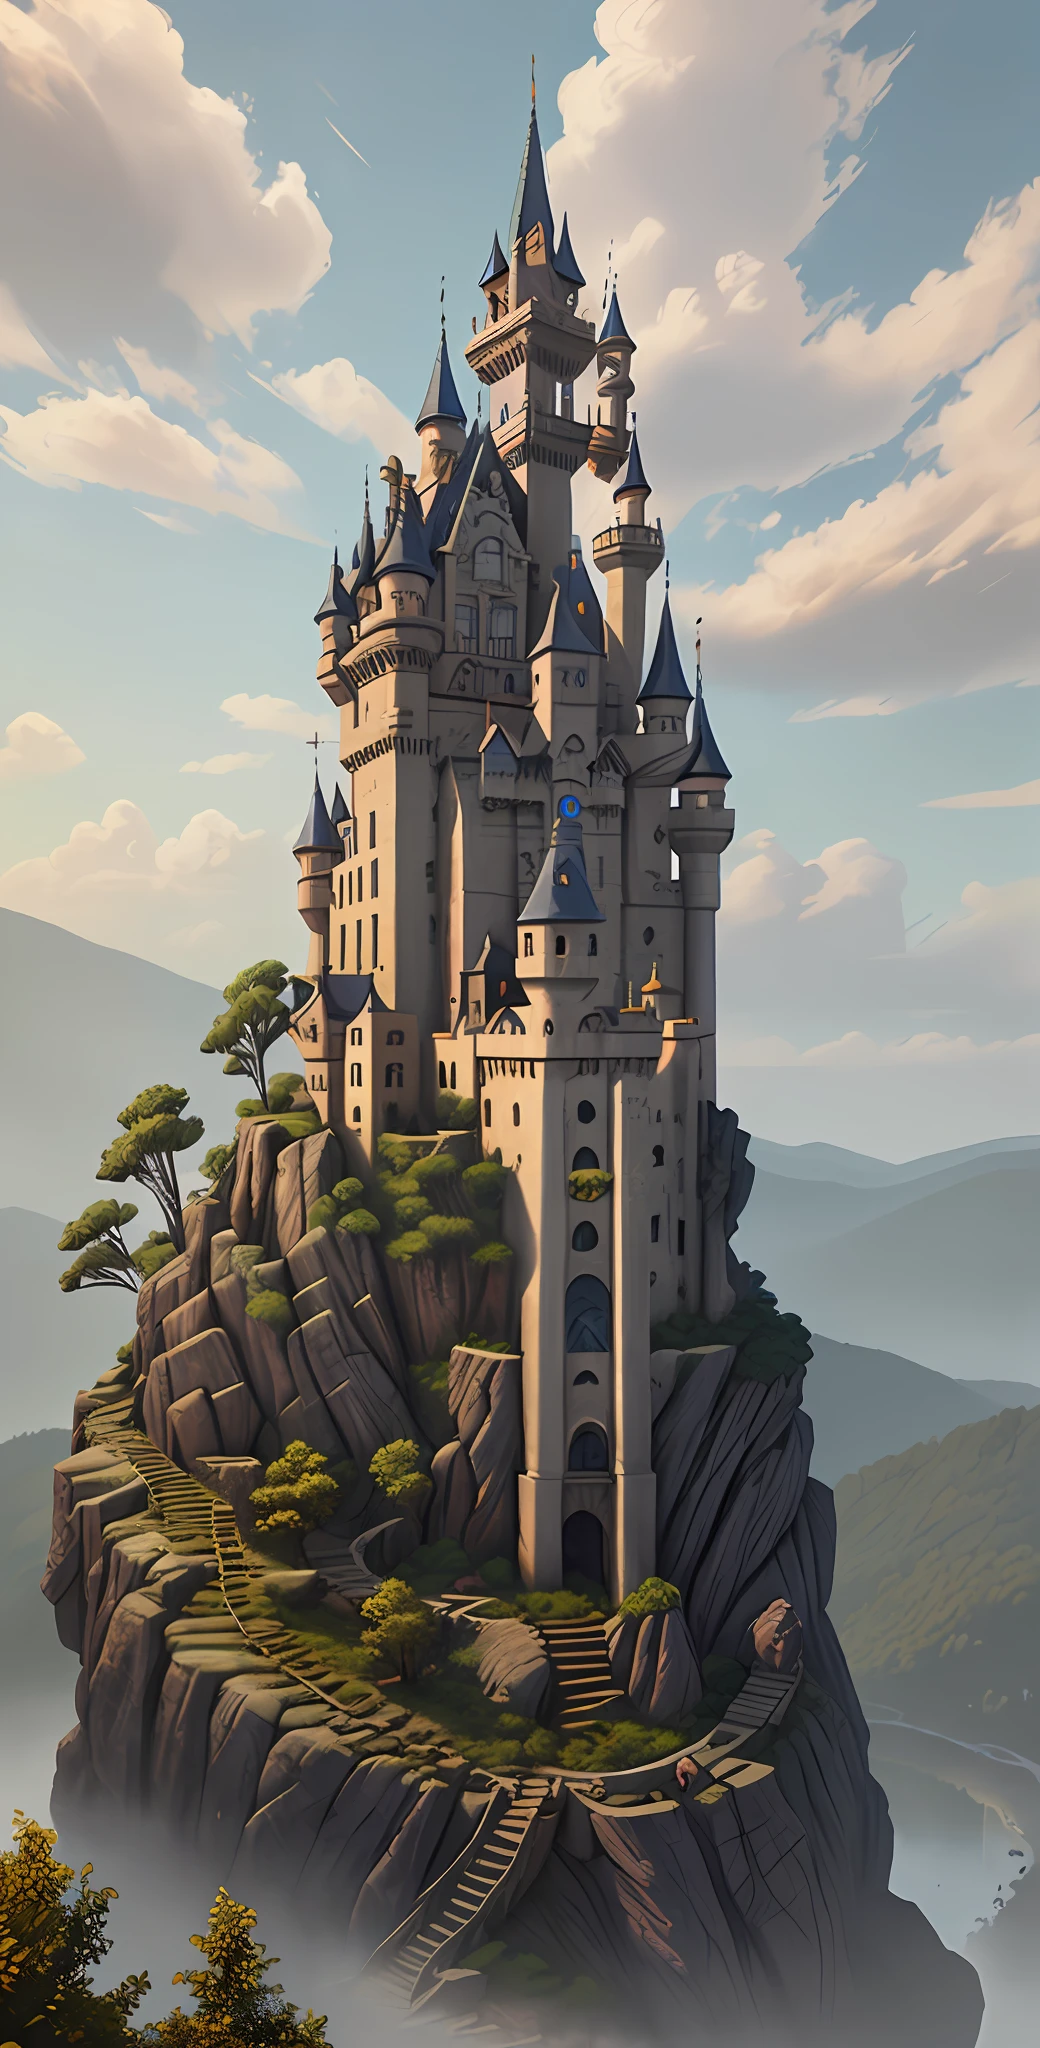 colorida, Um castelo proibido no alto das montanhas, arte de pixel, (detalhes intrincados:1.12), HDR, (detalhes intrincados, hiperdetalhado:1.15), (textura natural da pele, hiperrealismo, luz suave, afiado:1.2), arte do jogo, chave visual, Surreal